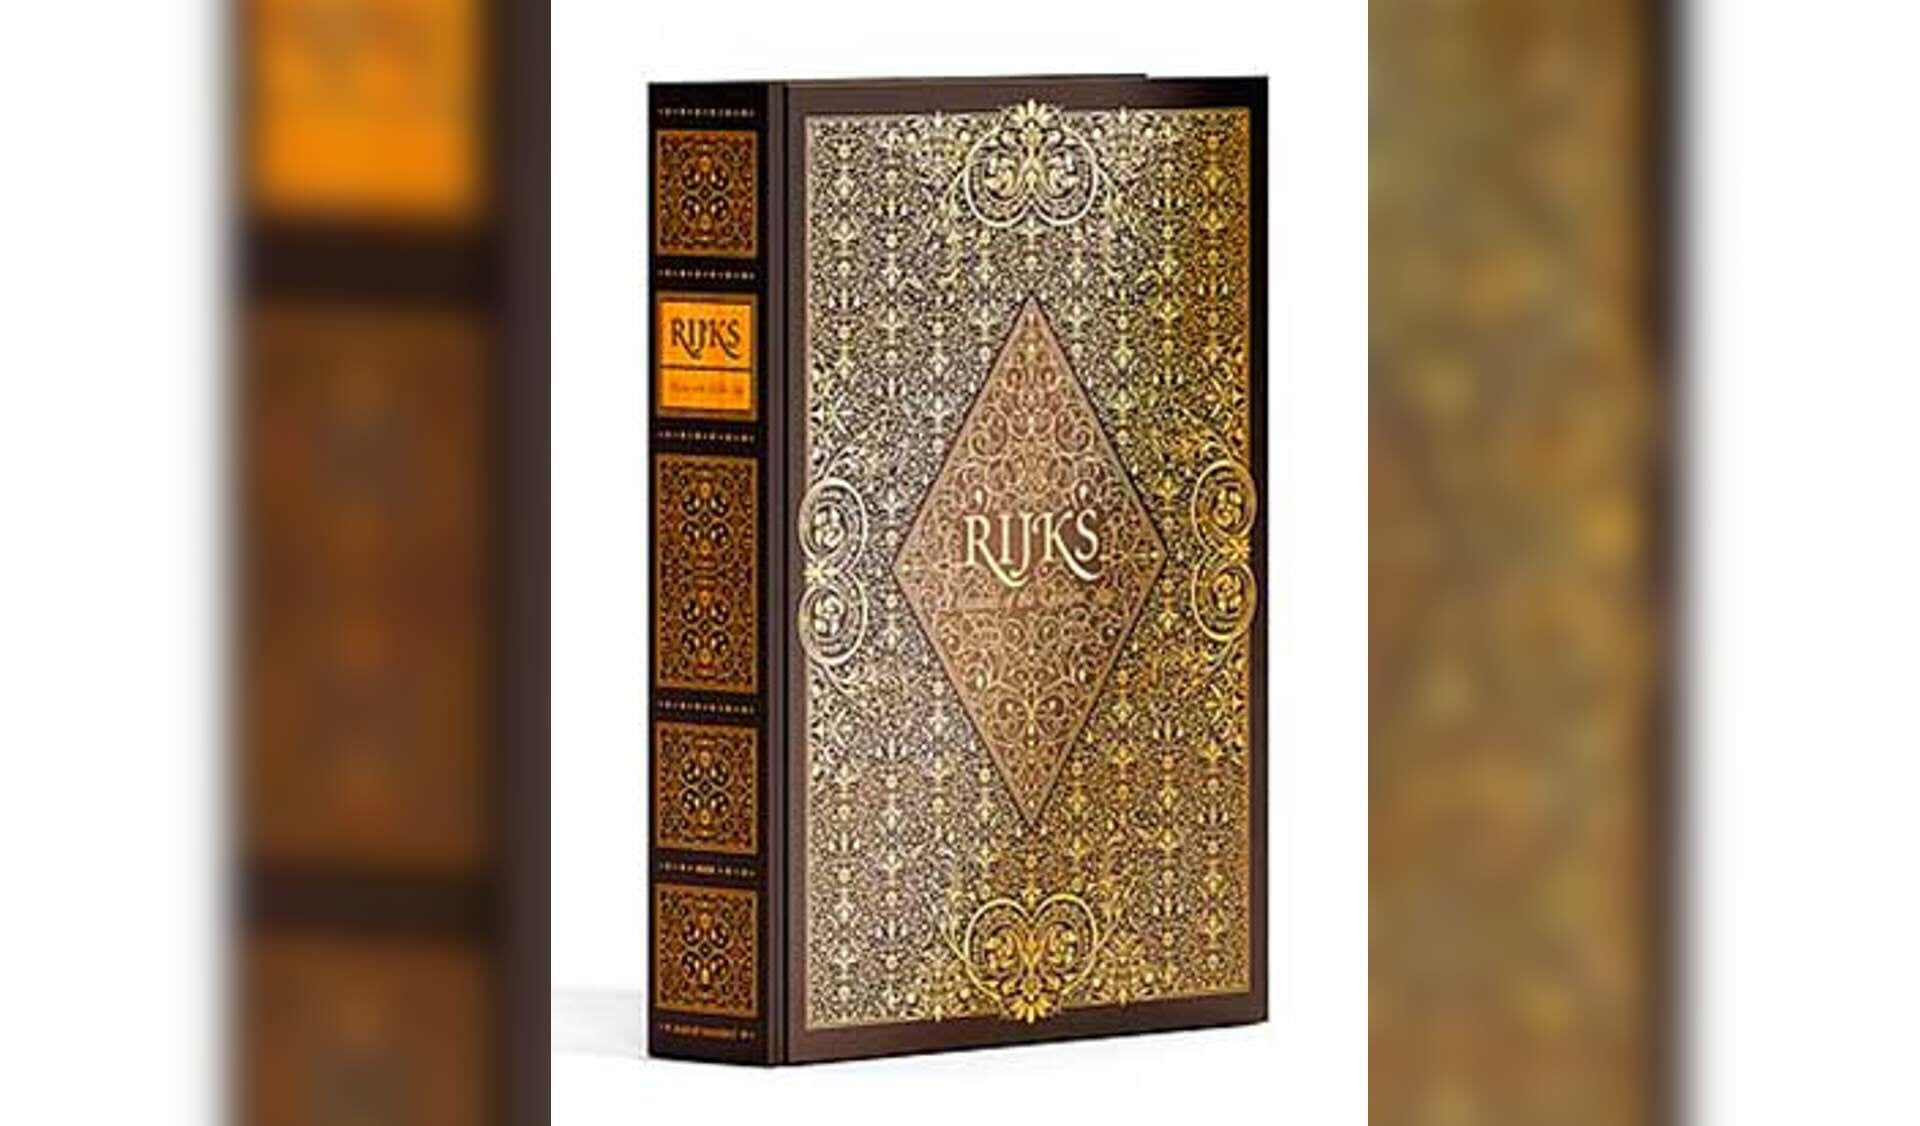 Komende zondag vertelt Coen Sligting in de Rijnlandse Boekhandel over het boek 'Rijks'.  | Foto PR